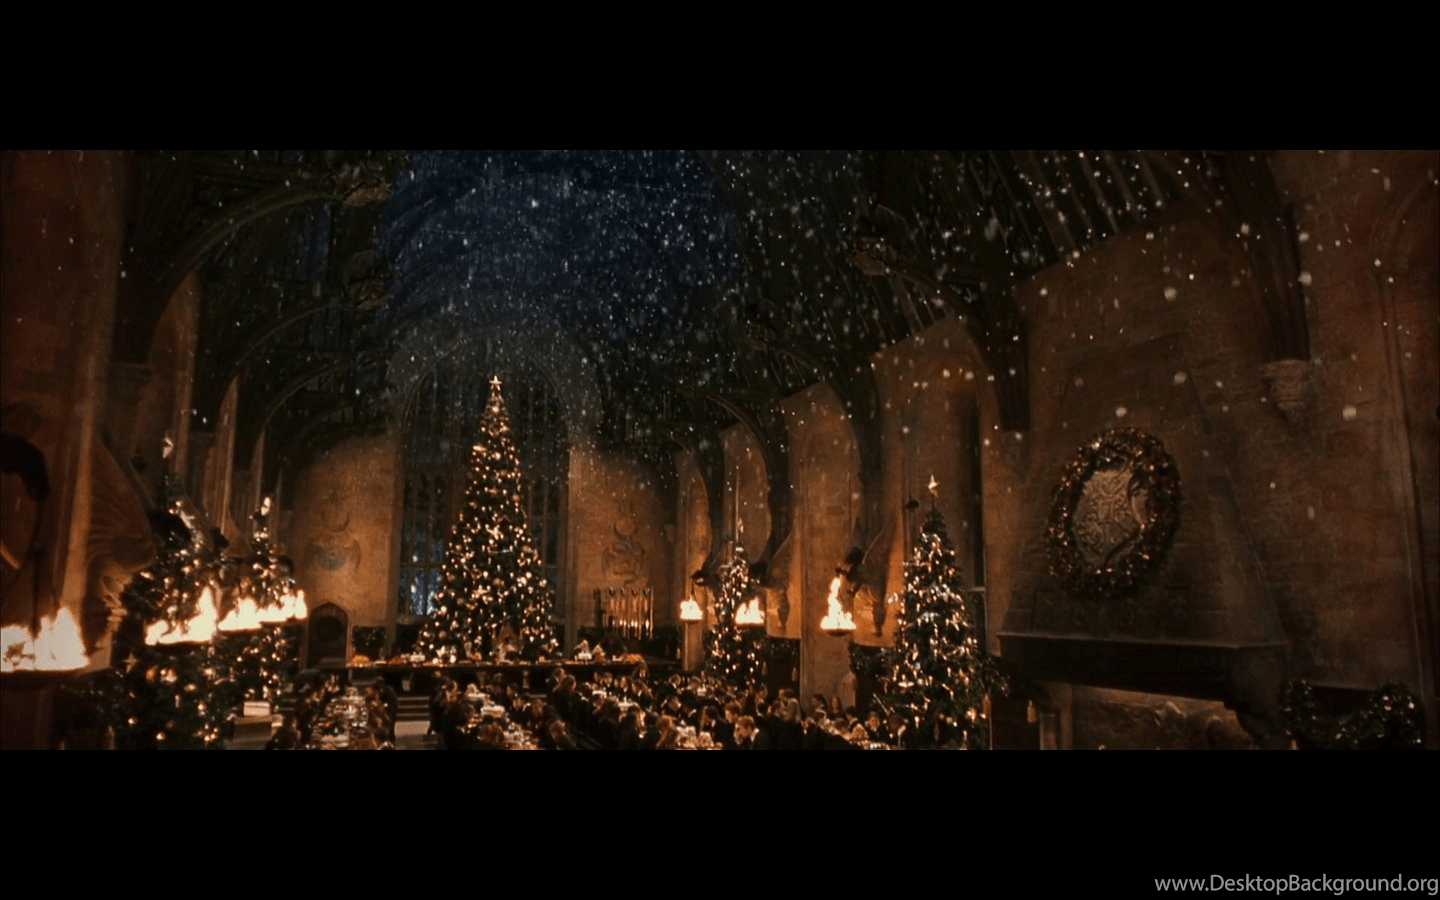 Hình nền máy tính phòng họp của trường Hogwarts tạo cho không gian làm việc của bạn trở nên thú vị hơn bao giờ hết. Mỗi lần bật máy tính, chúng ta đều có thể thấy cảm giác xuyên suốt từ series phim Harry Potter. Hãy tạm biệt mọi thứ quen thuộc để đắm chìm trong thế giới phù thủy của trường Hogwarts.